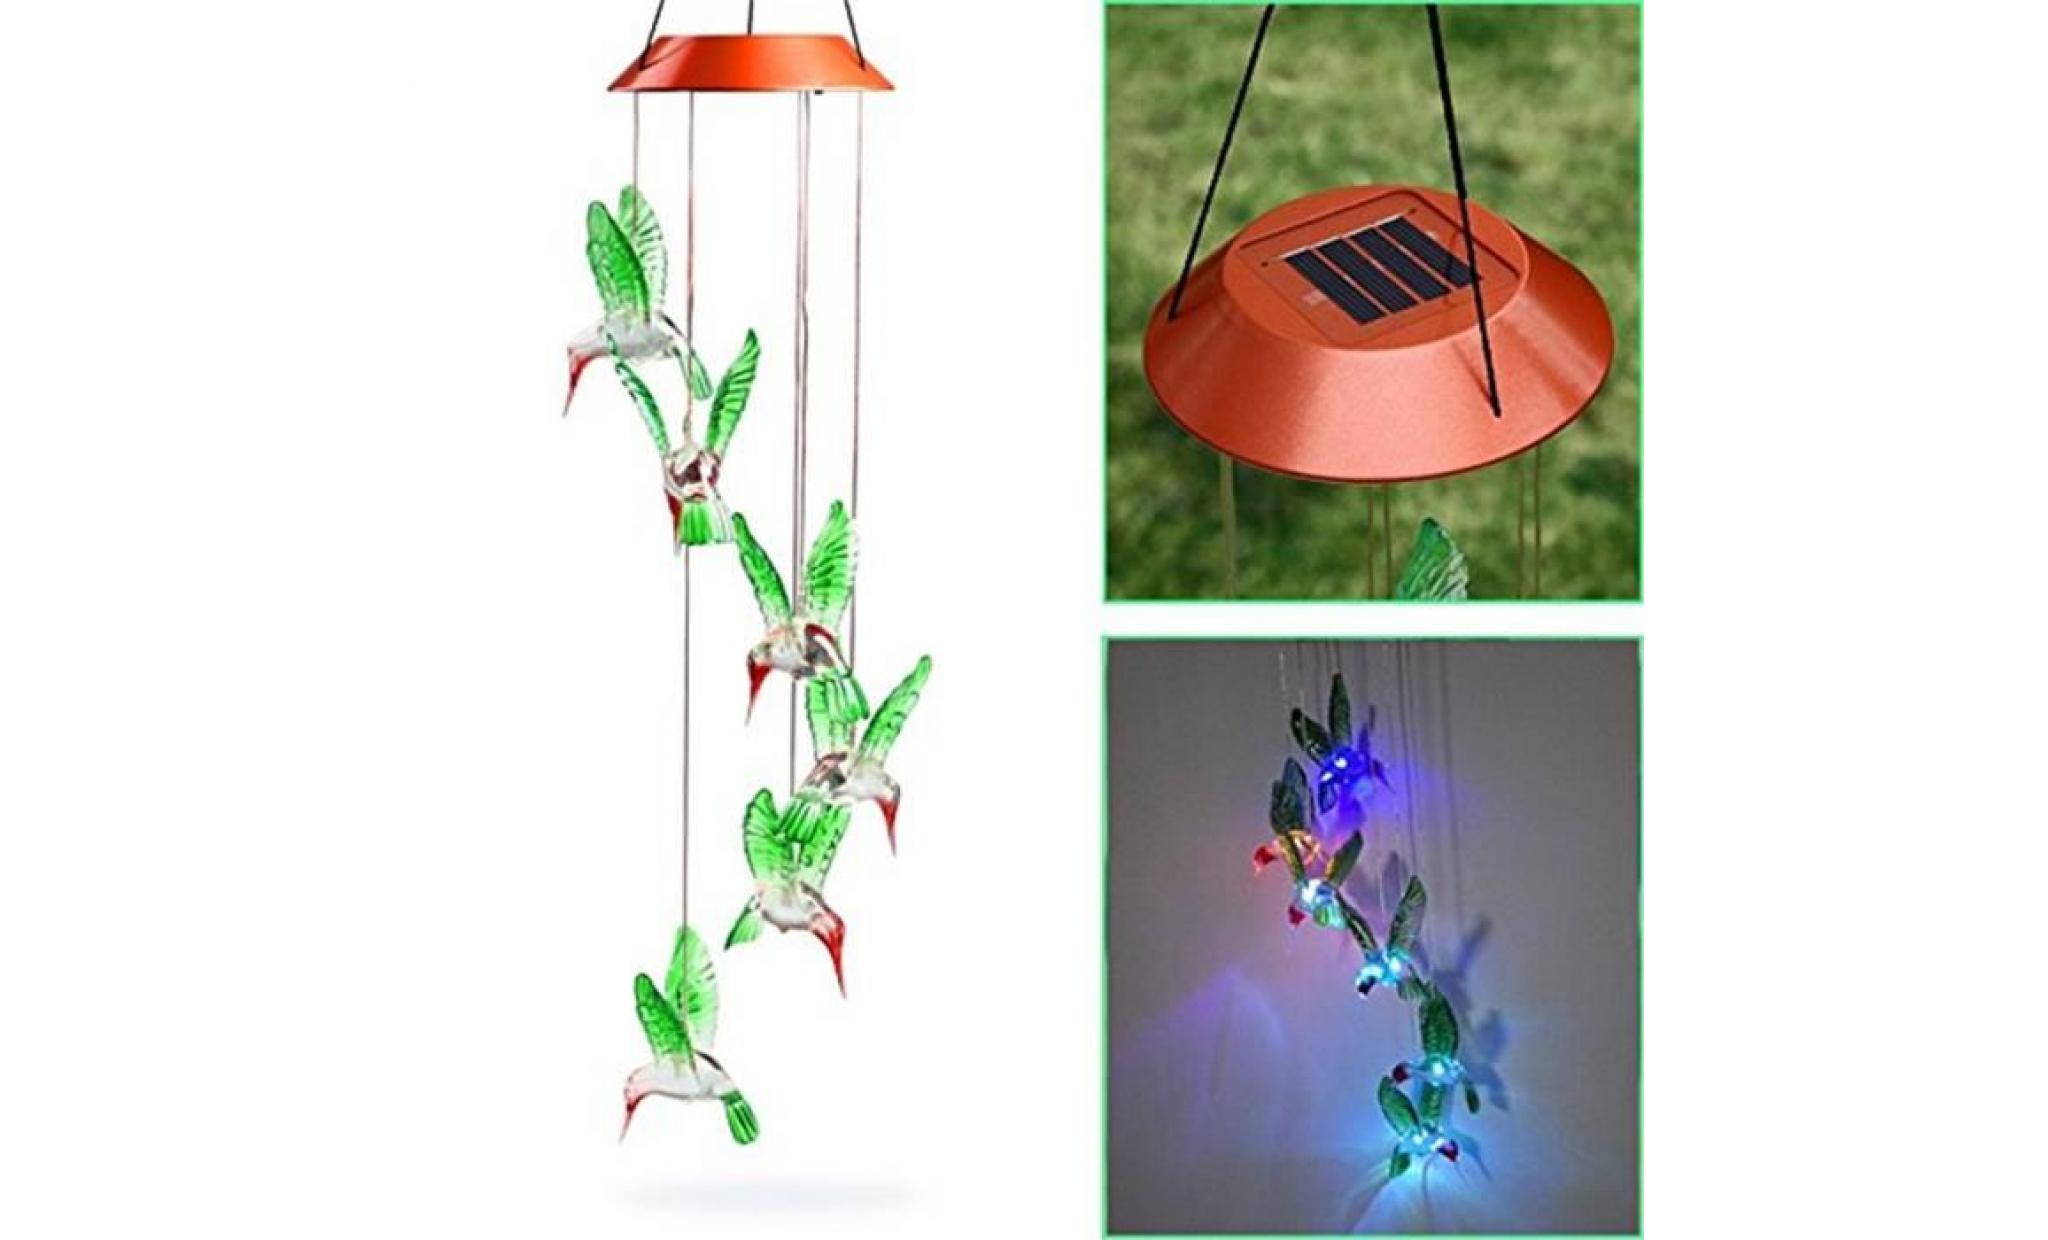 borne solaire vent changeant de colibri de vent solaire de carillon de vent de led pour l'éclairage de jardinage 134